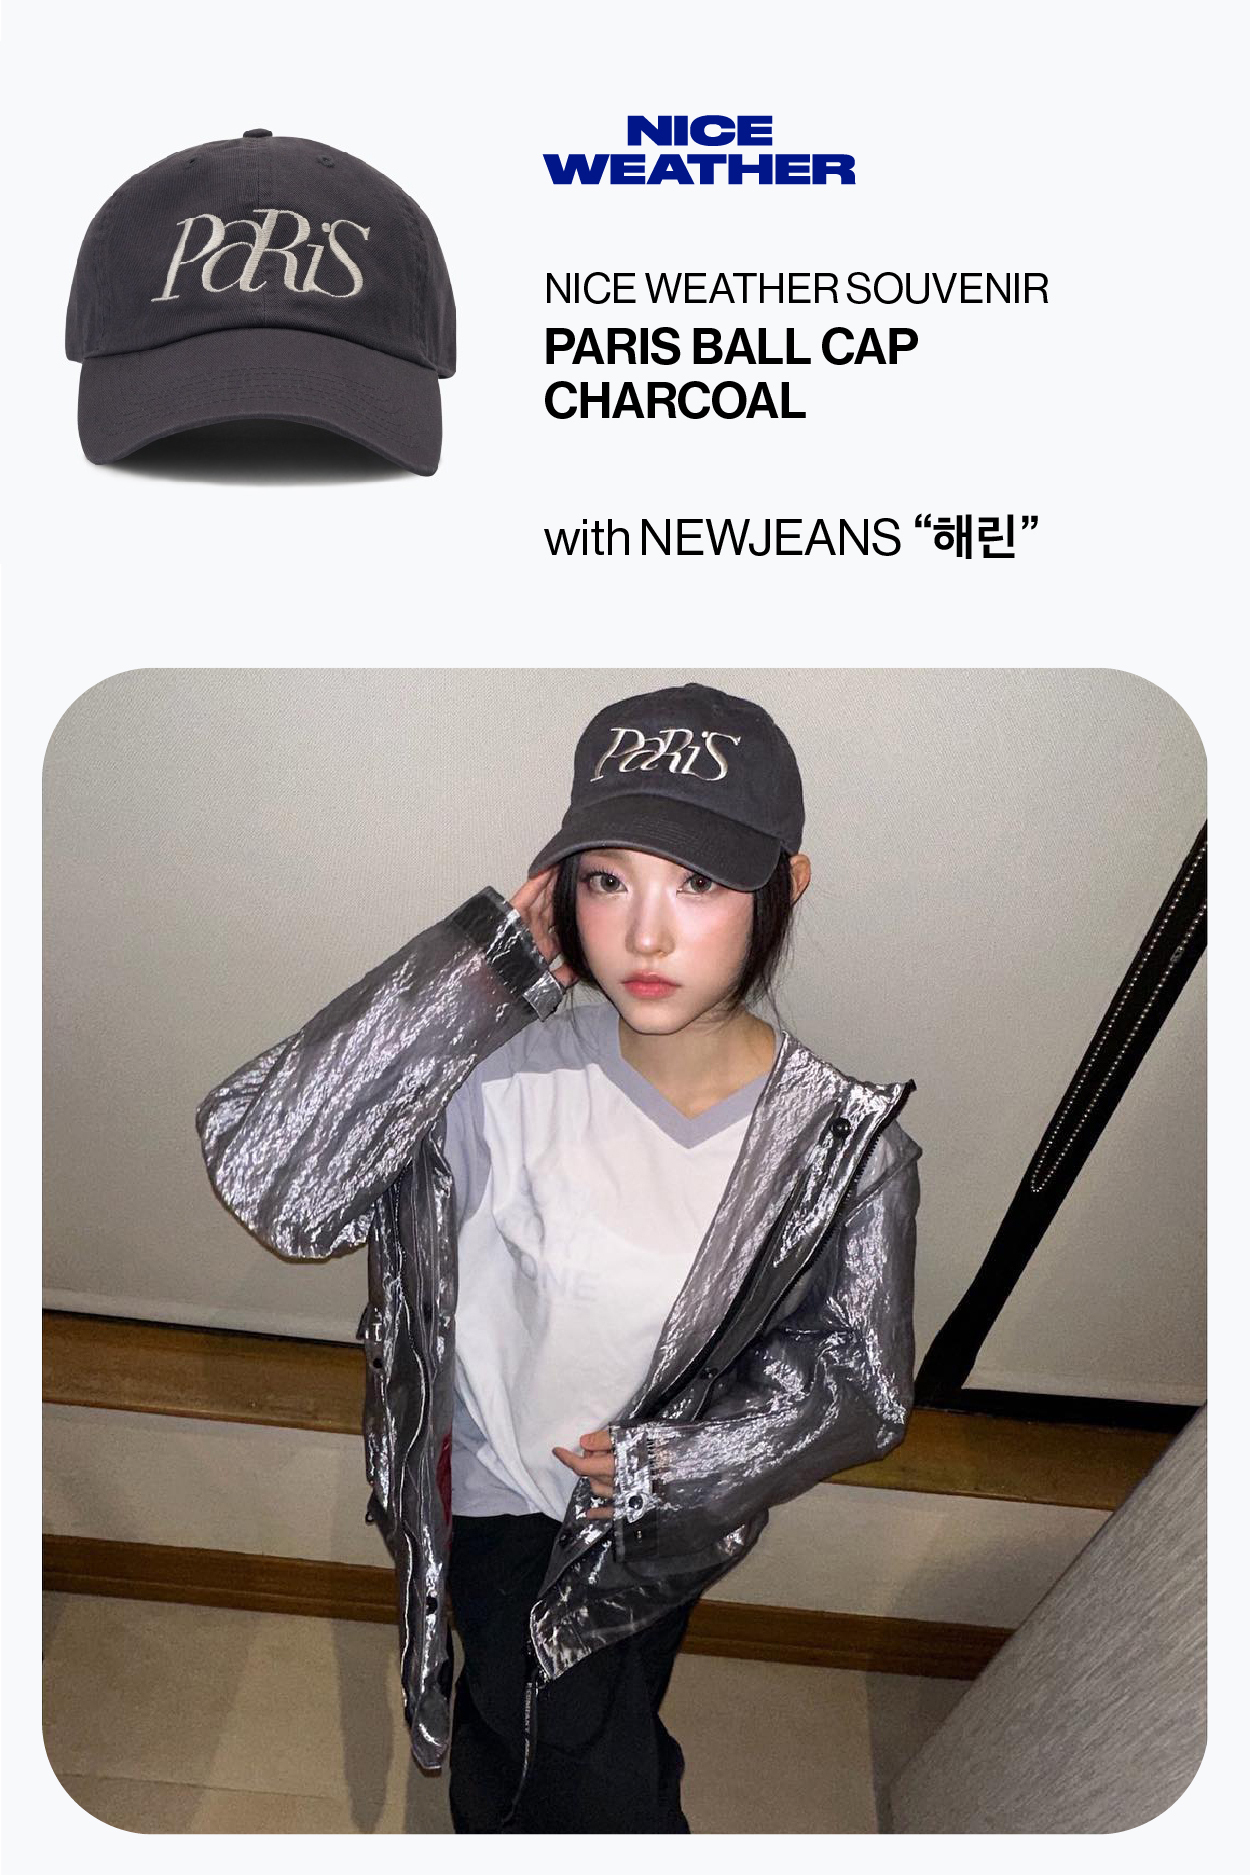 PARIS BALL CAP CHARCOAL